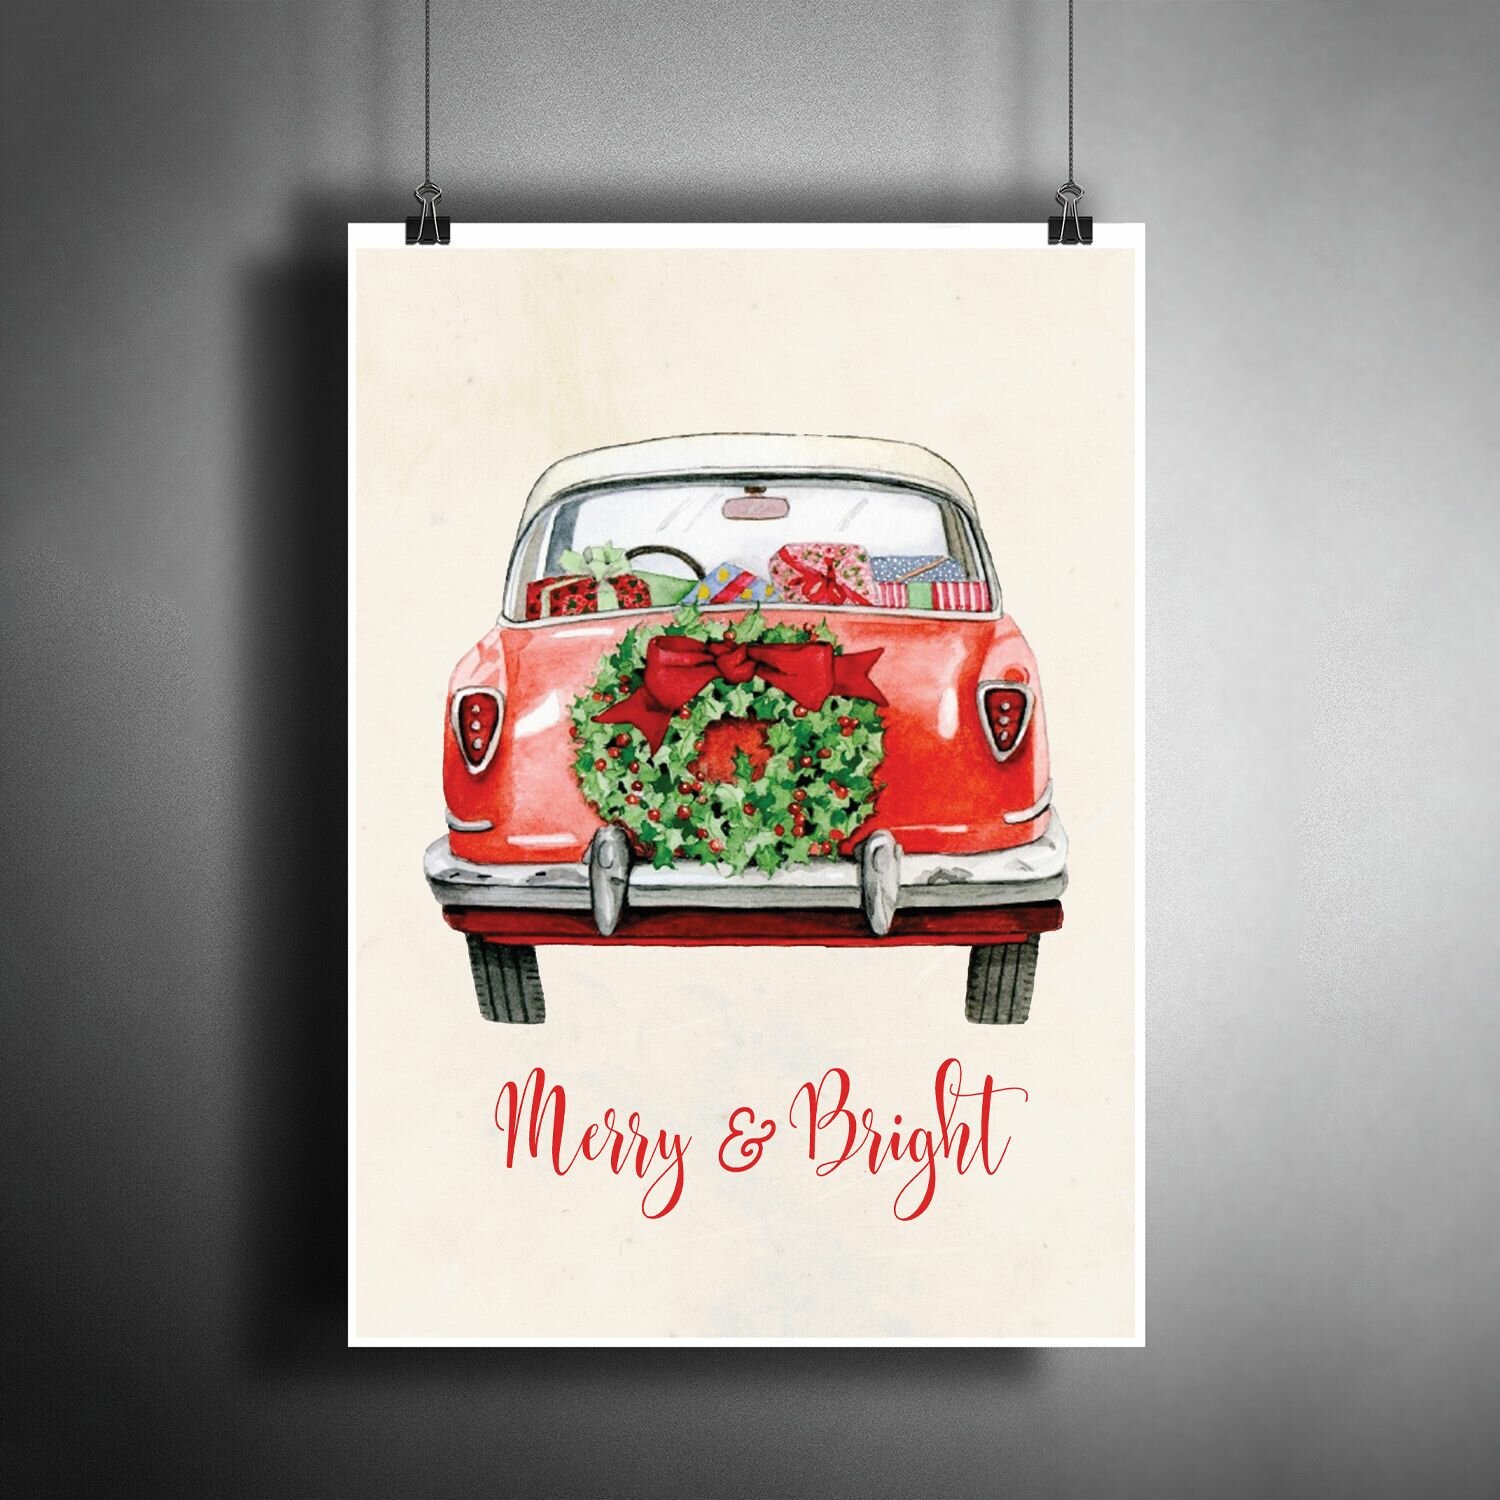 Постер плакат "Веселого и яркого Рождества и Нового года" / Декор для дома, офиса, комнаты, квартиры, детской A3 (297 x 420 мм)